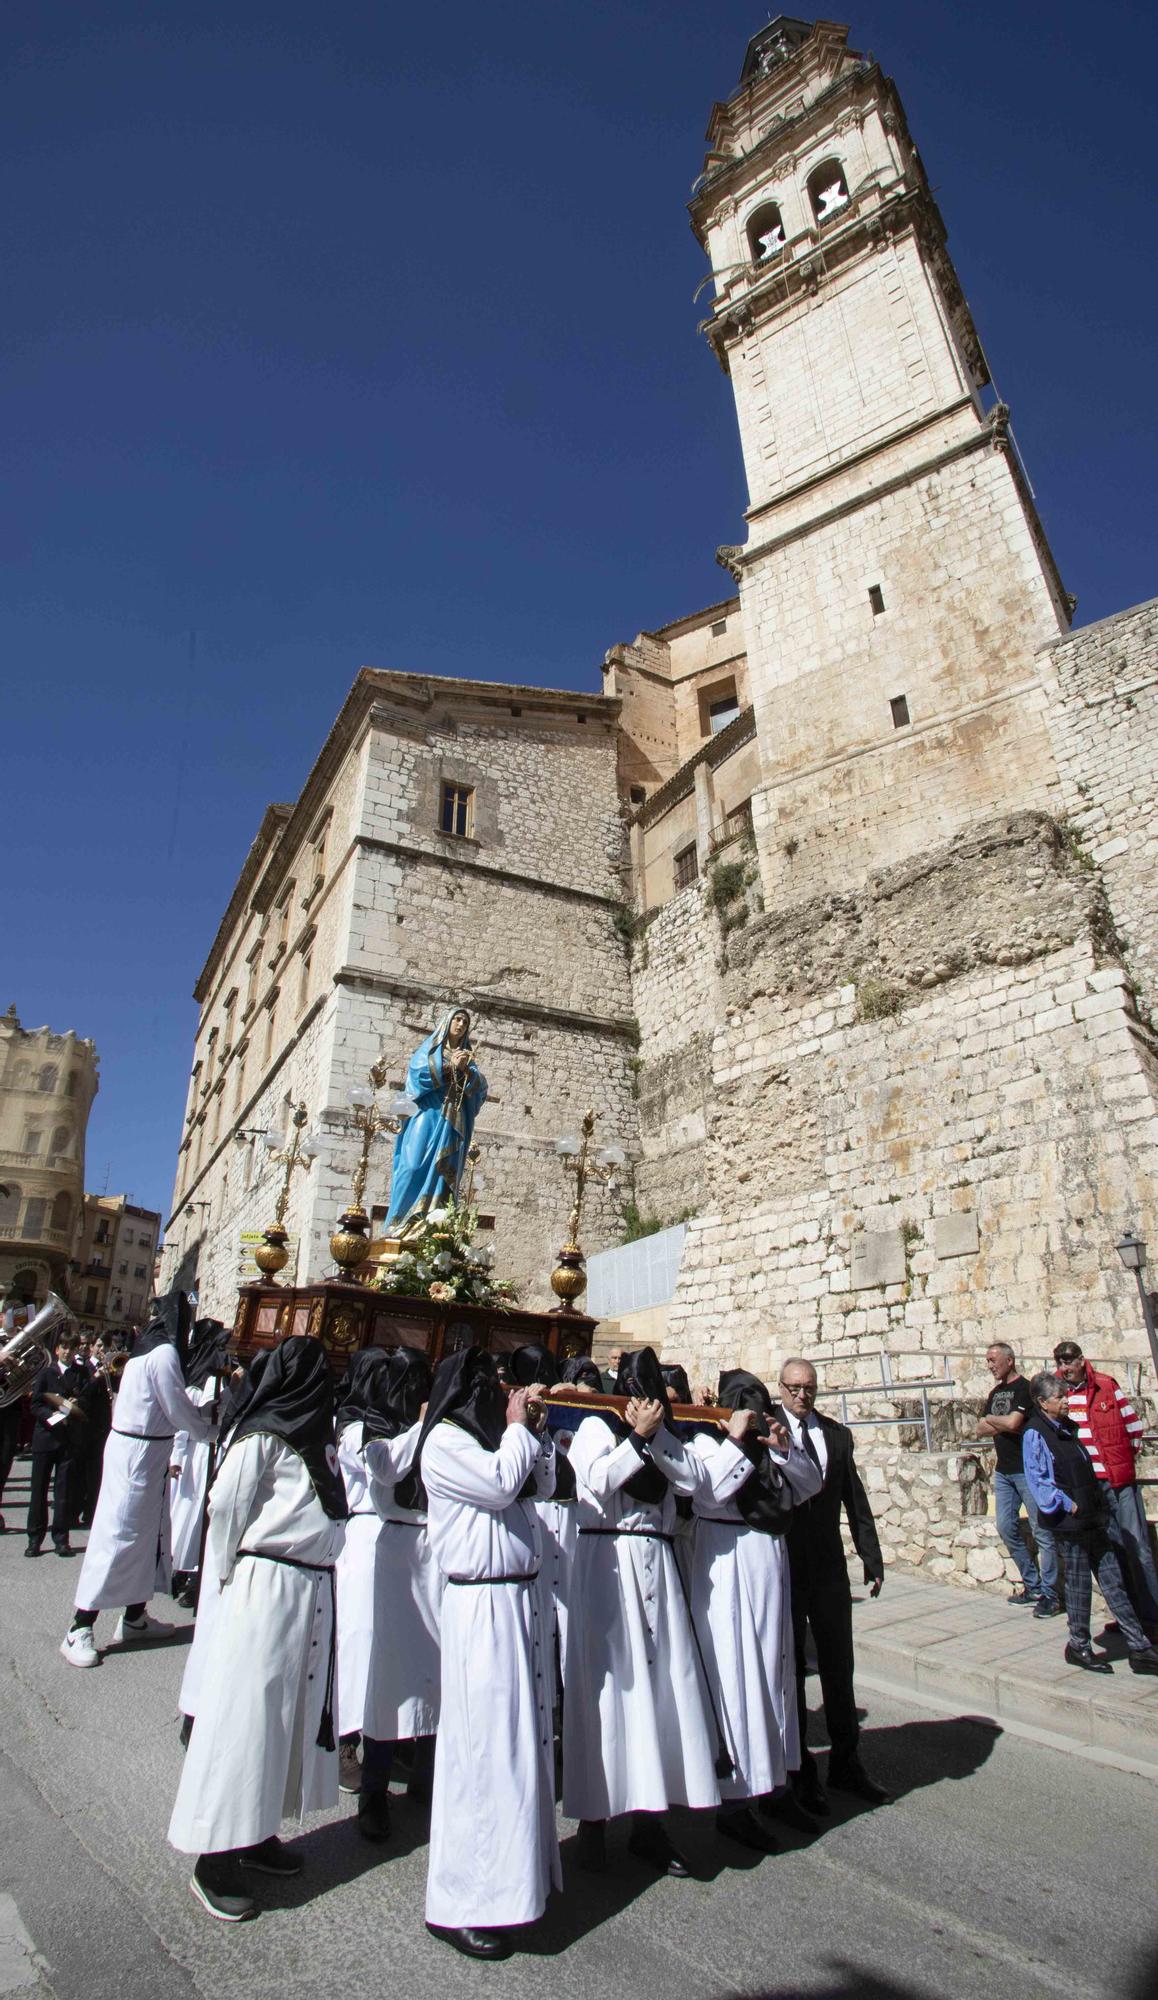 Ontinyent acoge sus tradicionales procesiones del Viernes Santo